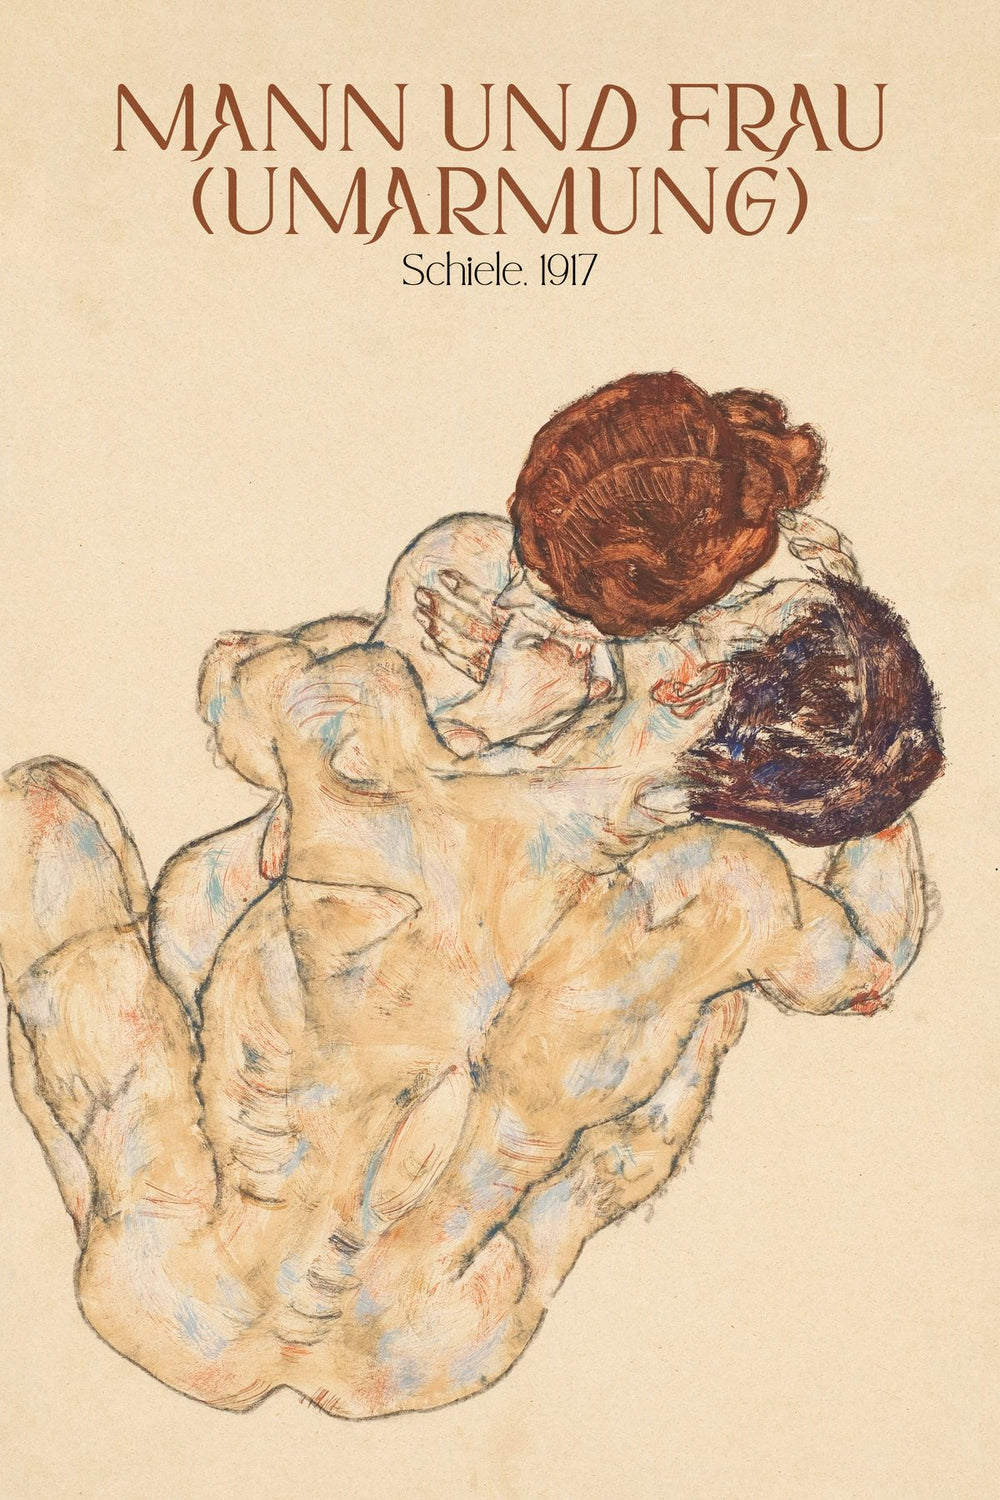 Man Und Frau Schiele Exhibition Poster